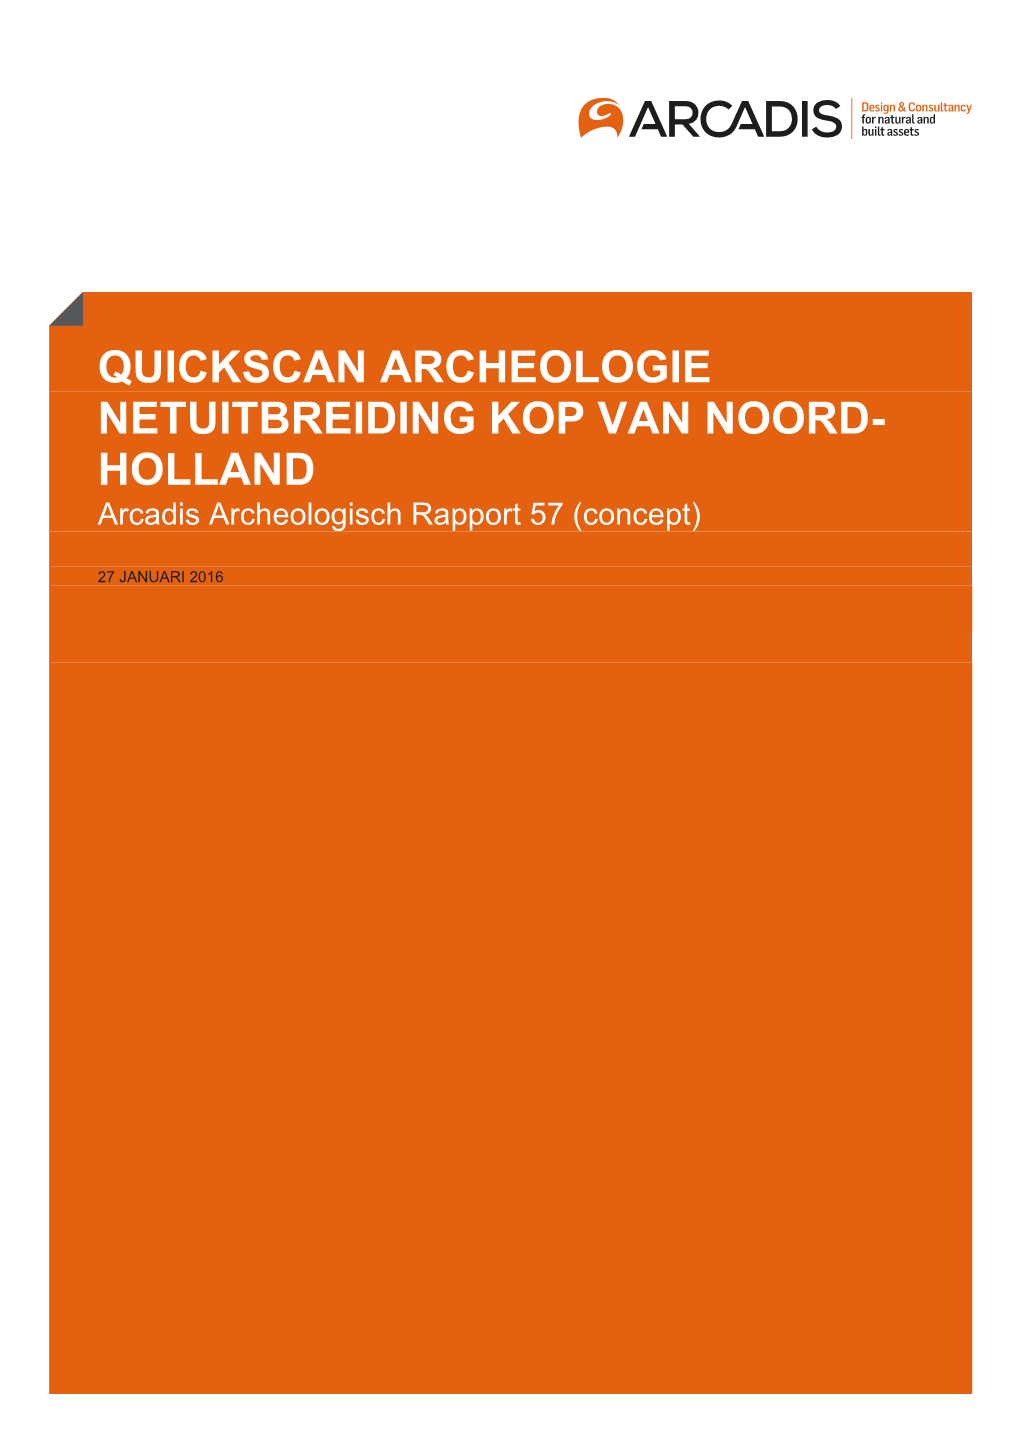 QUICKSCAN ARCHEOLOGIE NETUITBREIDING KOP VAN NOORD- HOLLAND Arcadis Archeologisch Rapport 57 (Concept)